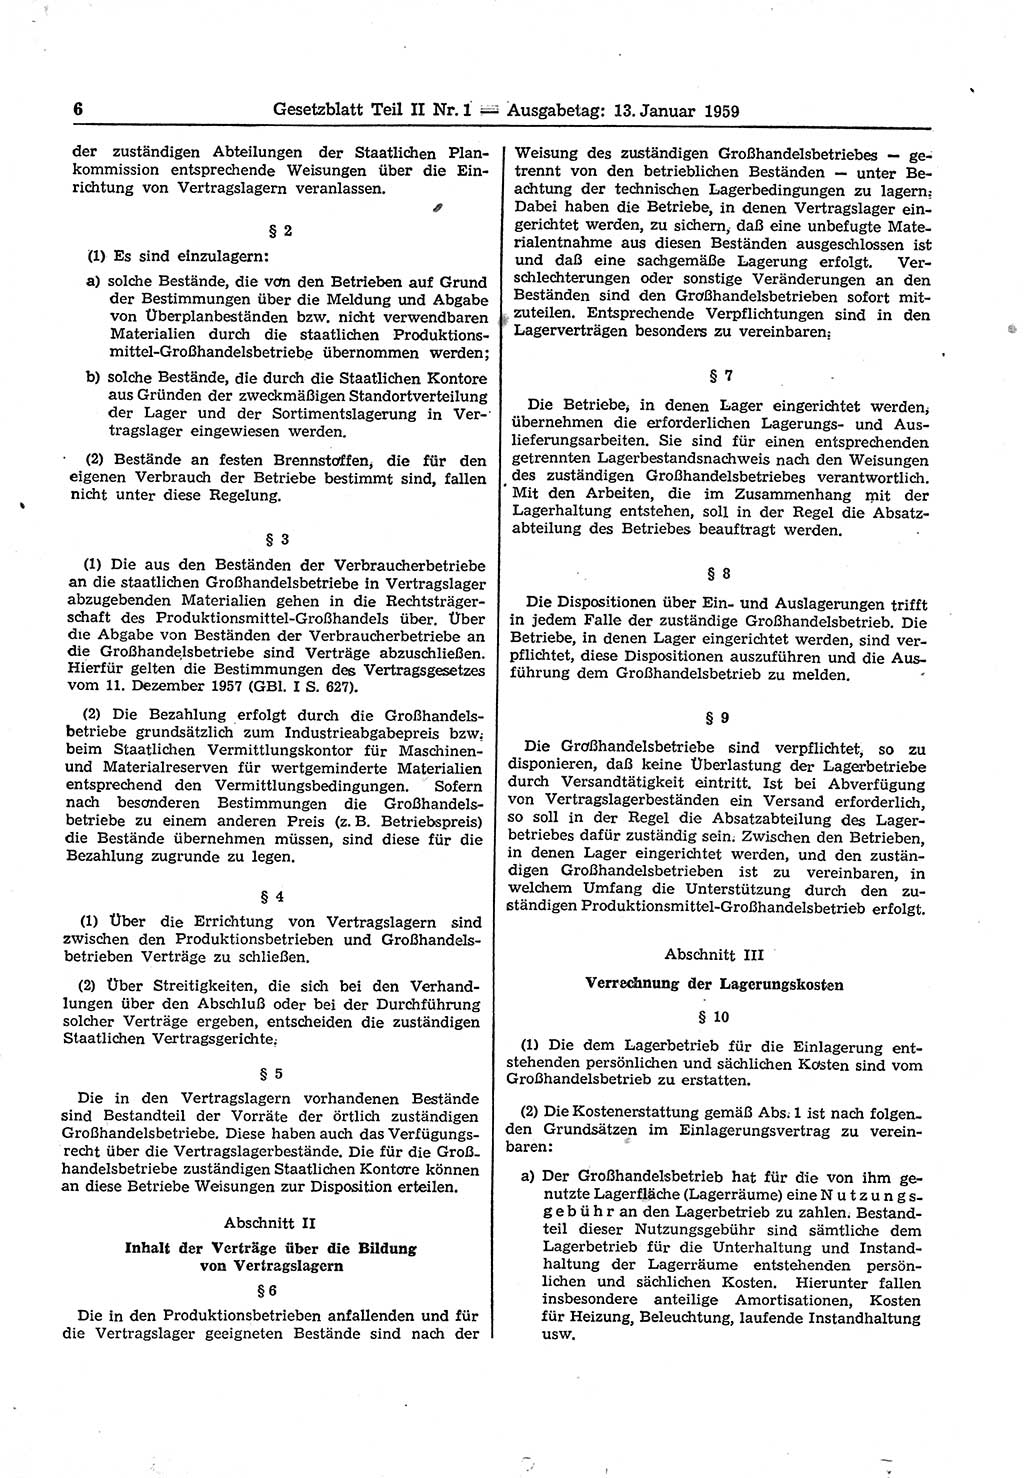 Gesetzblatt (GBl.) der Deutschen Demokratischen Republik (DDR) Teil ⅠⅠ 1959, Seite 6 (GBl. DDR ⅠⅠ 1959, S. 6)